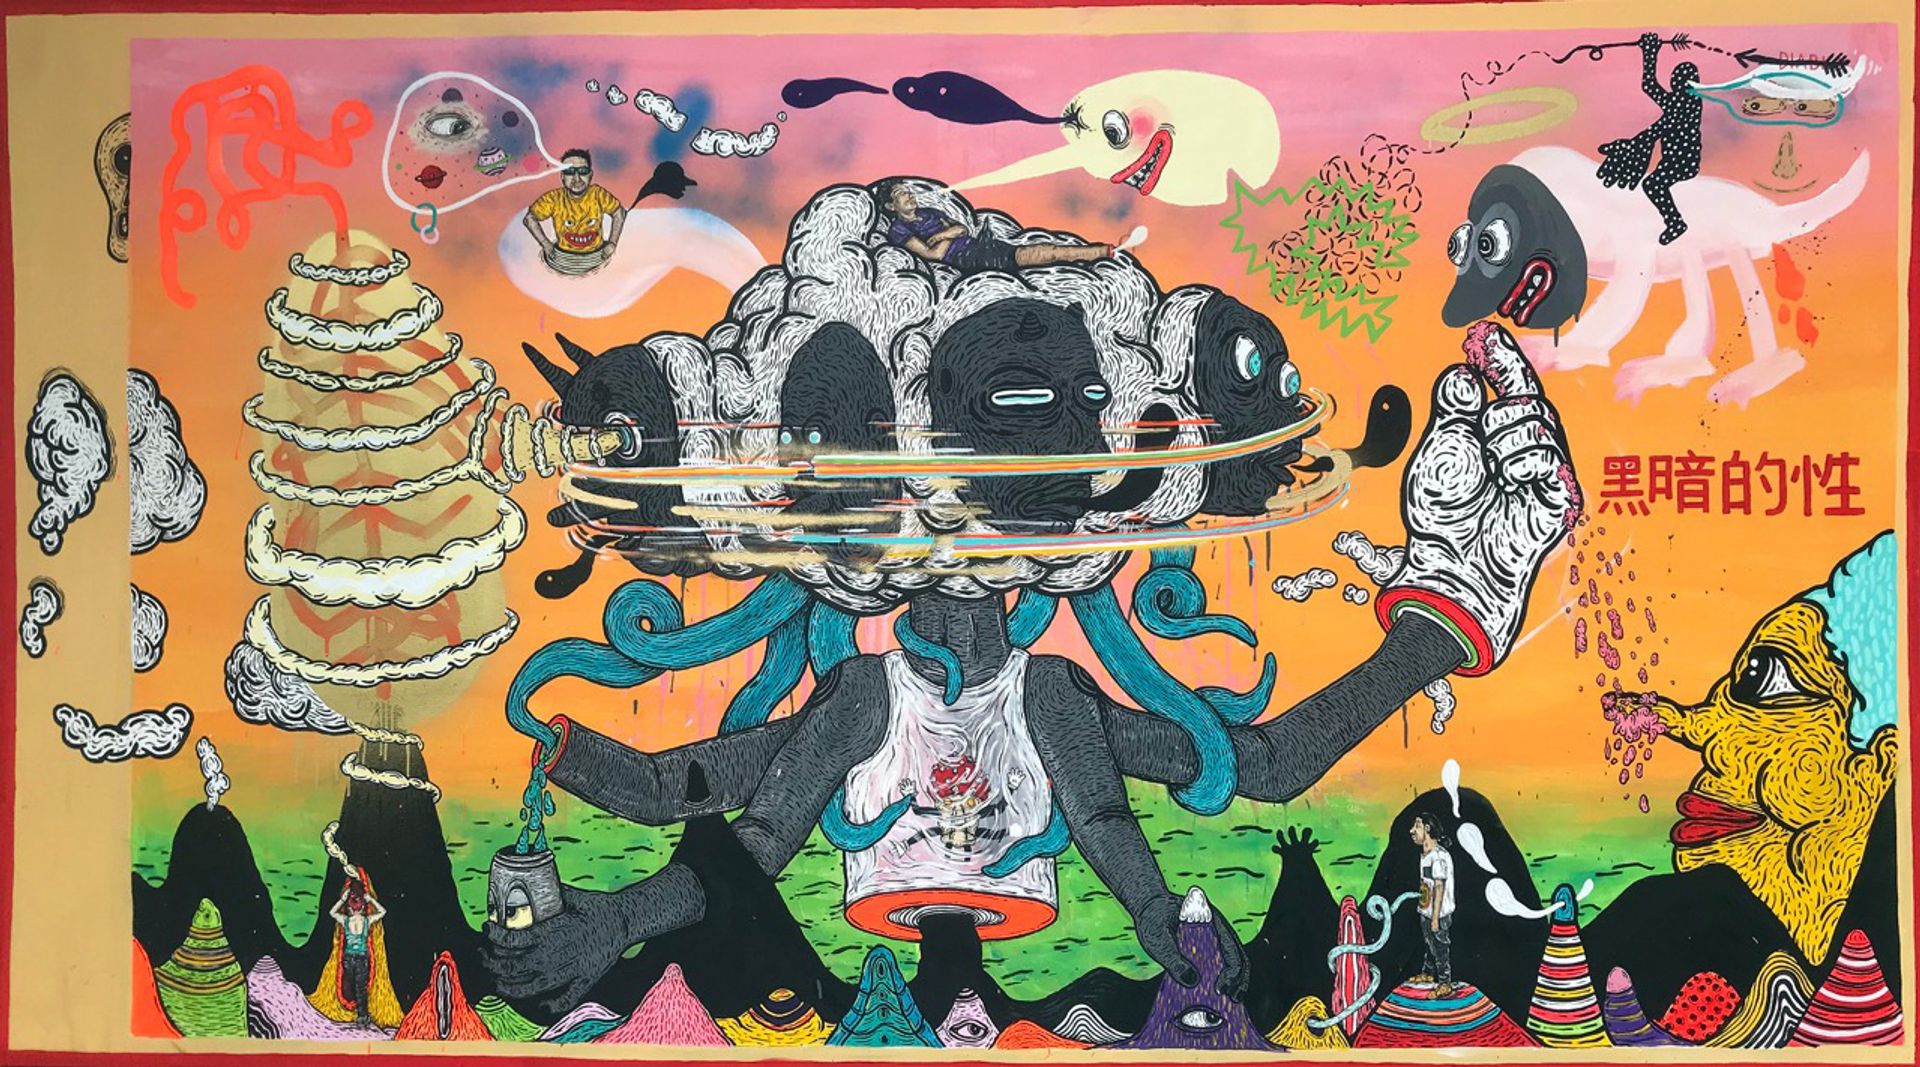 Ricardo Muñoz Izquierdo's Delirium Trimurti (2019), at Galeria Enrique Guerrero's booth at Zona Maco Galeria Enrique Guerrero